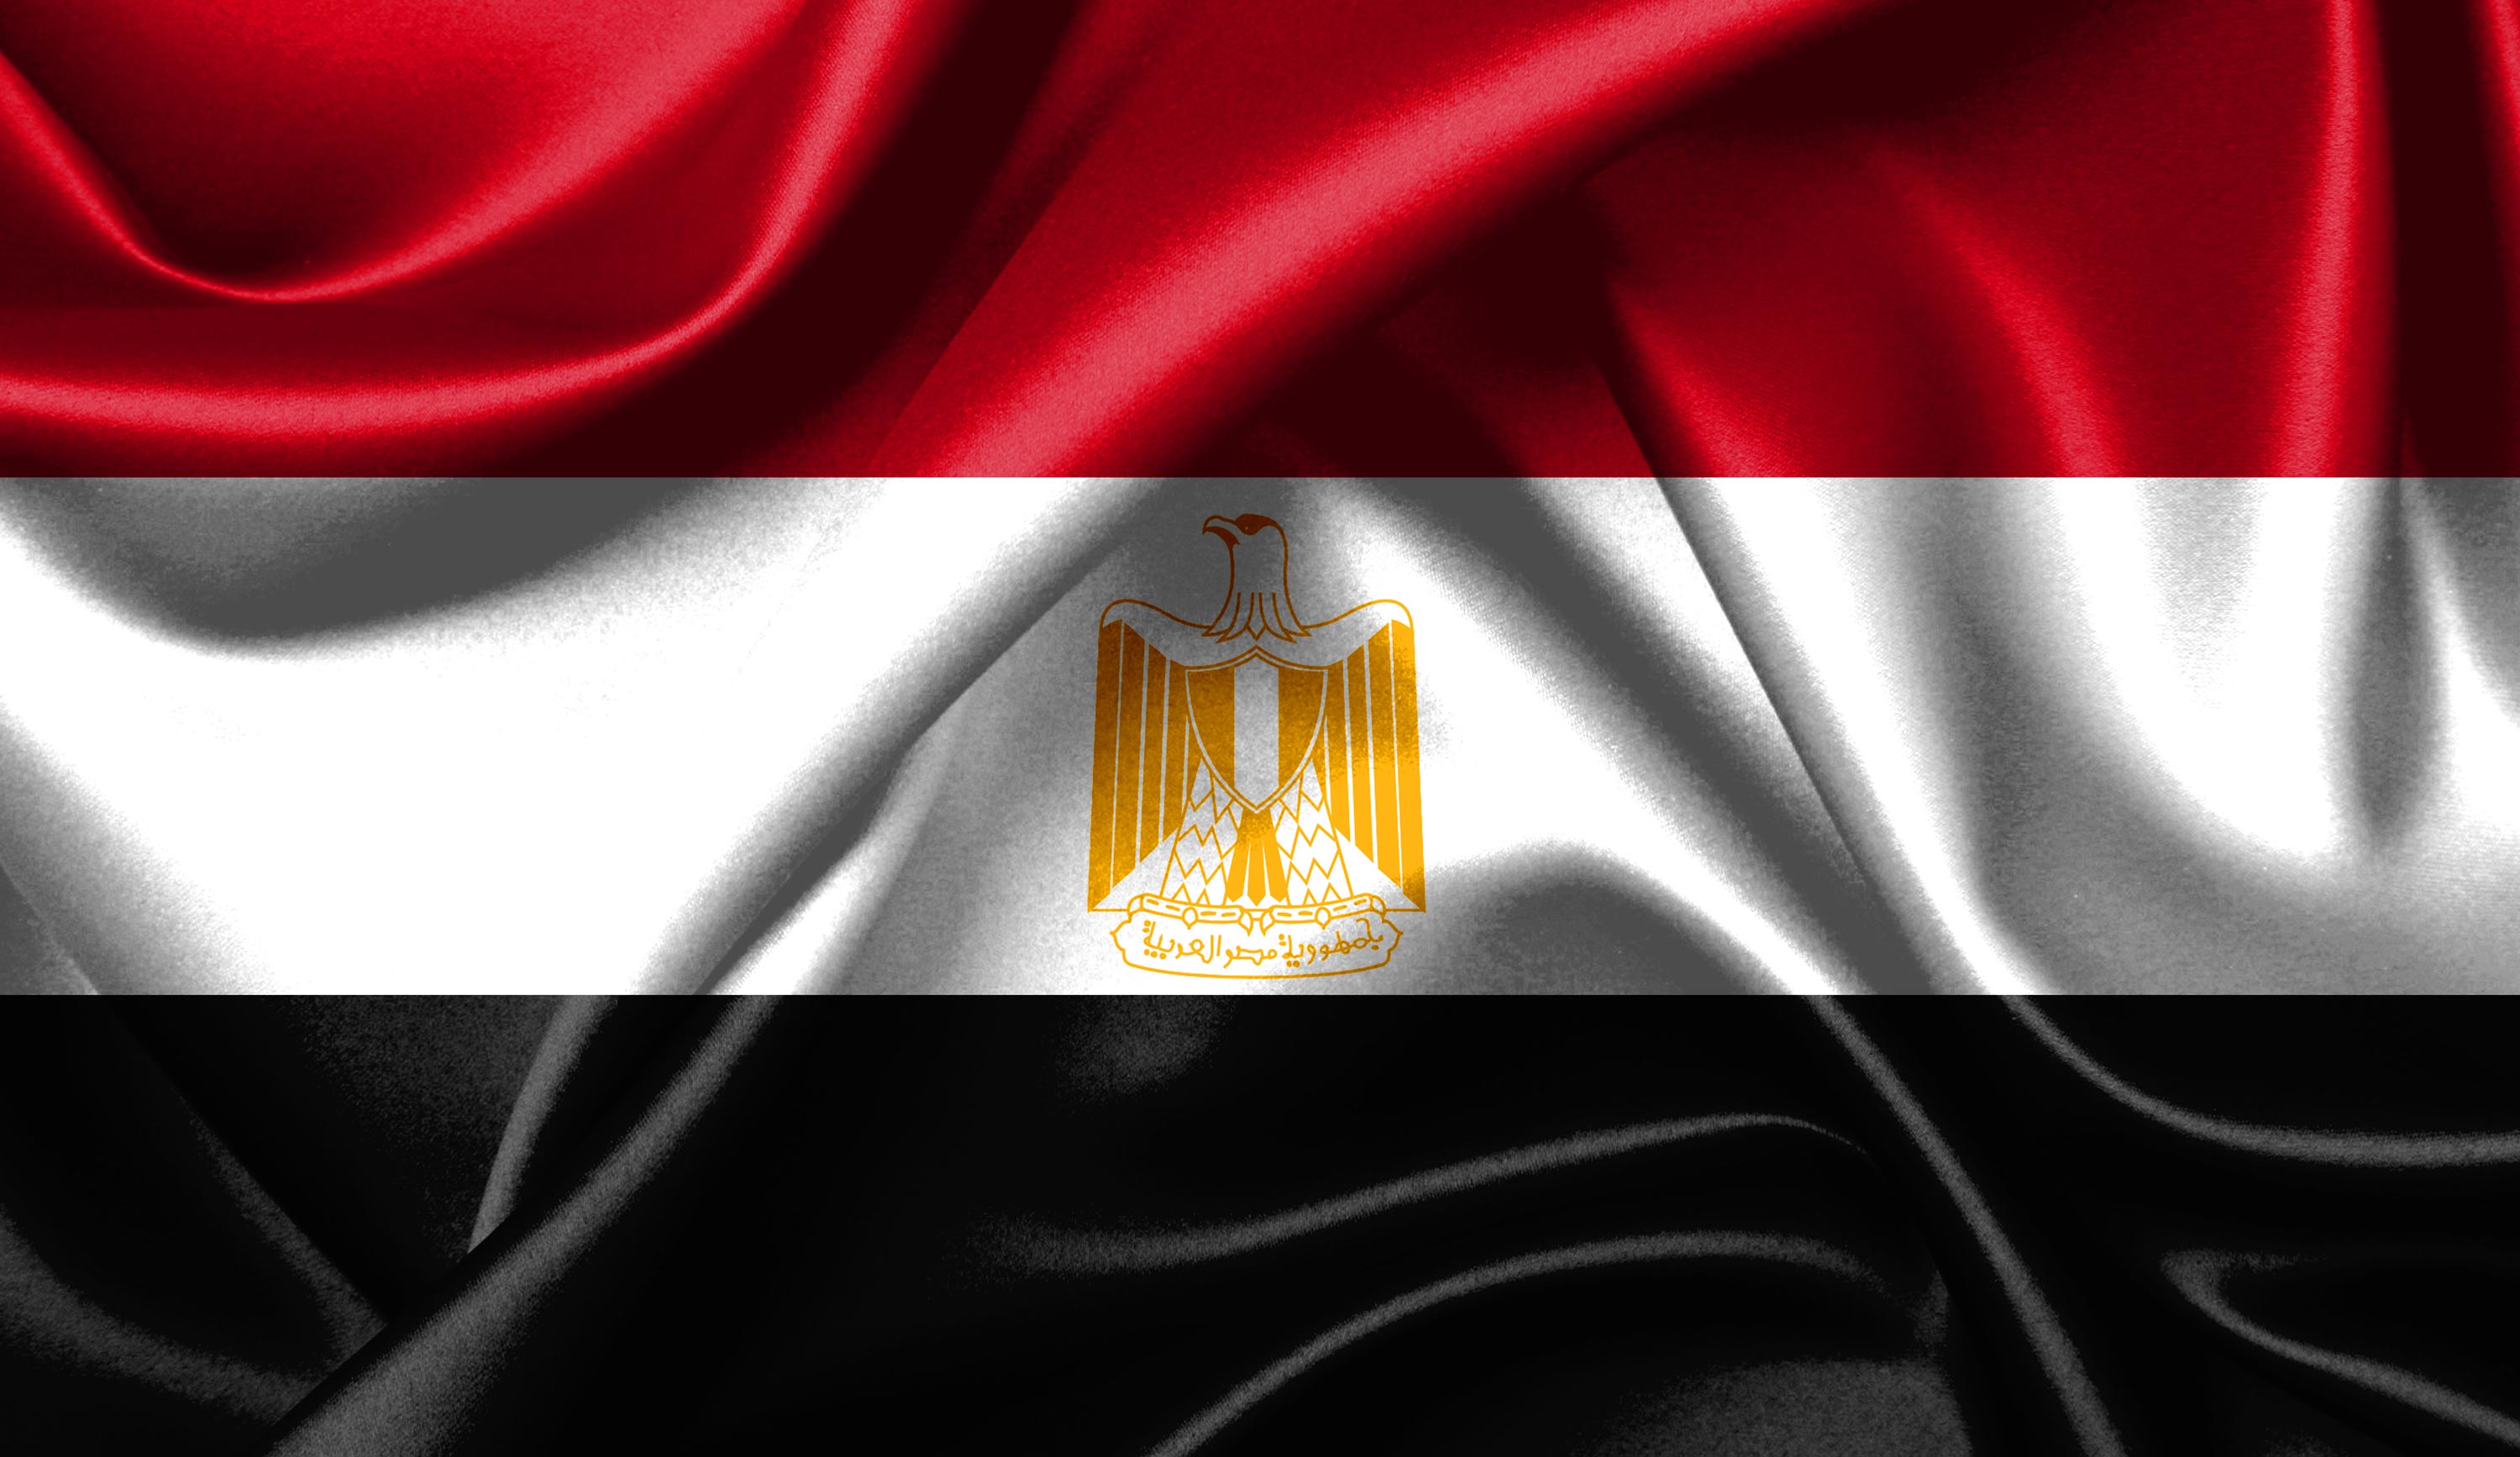 الهيئة الوطنية للانتخابات في مصر: تمديد مدة الرئاسة إلى 6 سنوات بدلا من 4